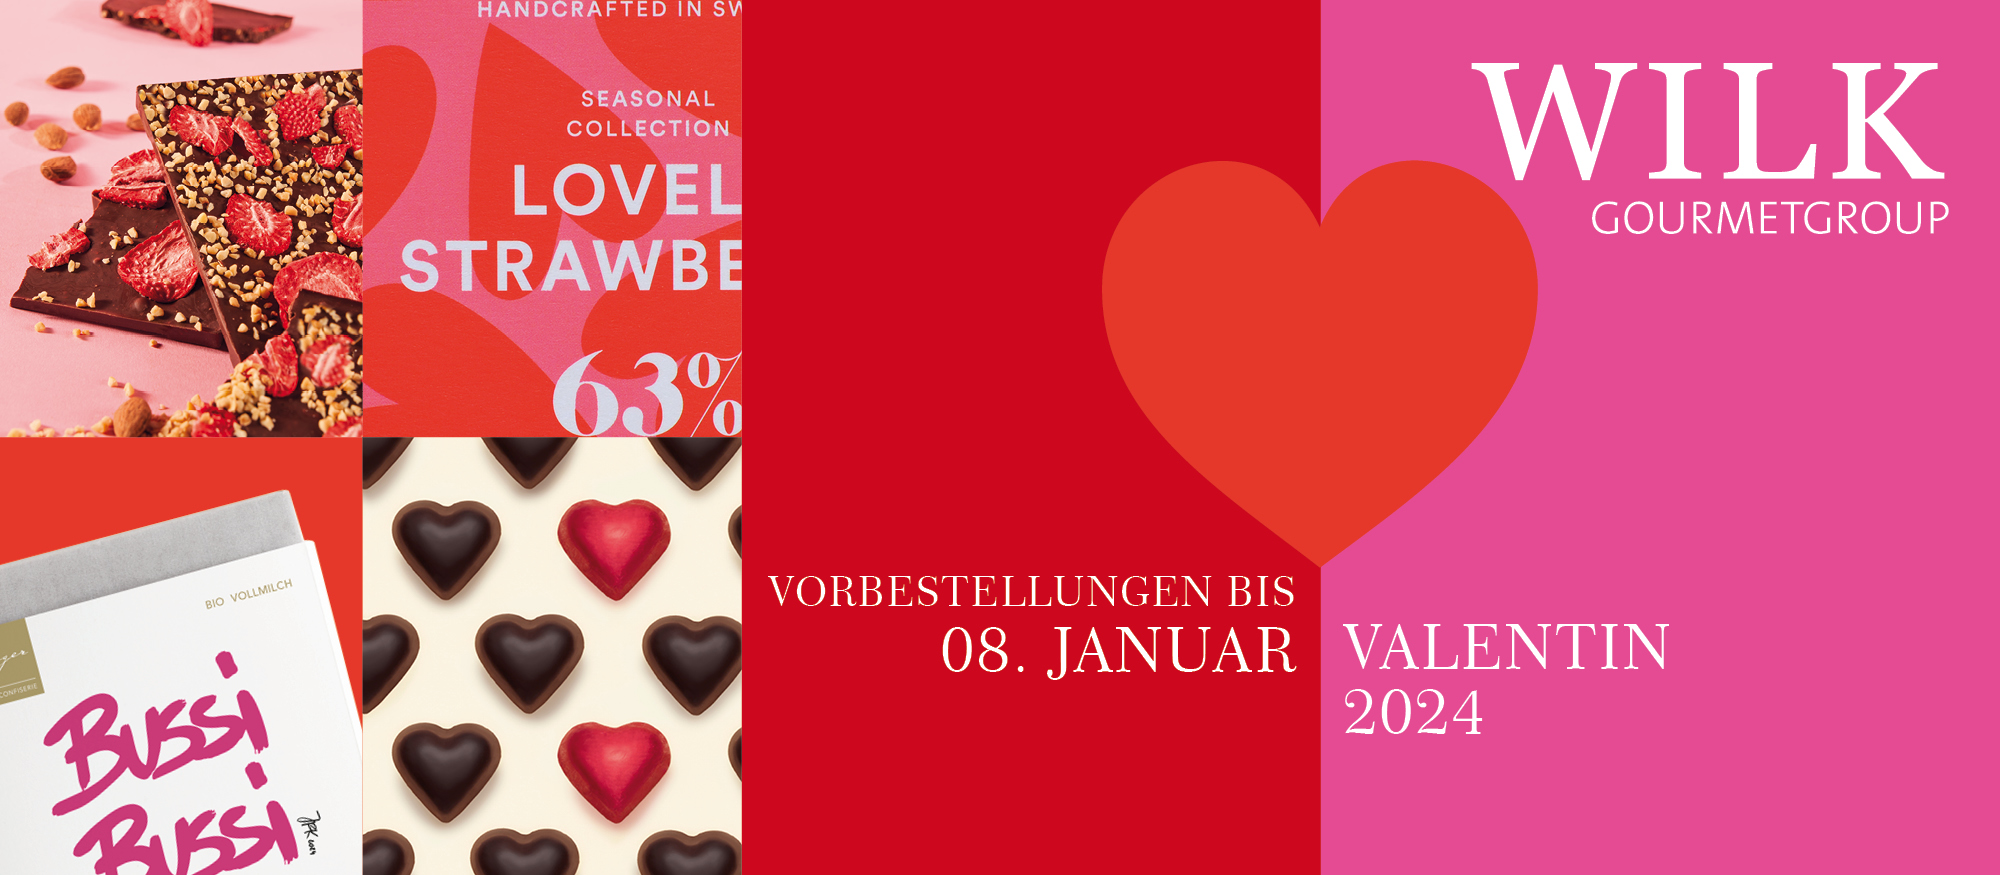 media/image/Banner-einkaufswelt-Valentin-24-960.jpg